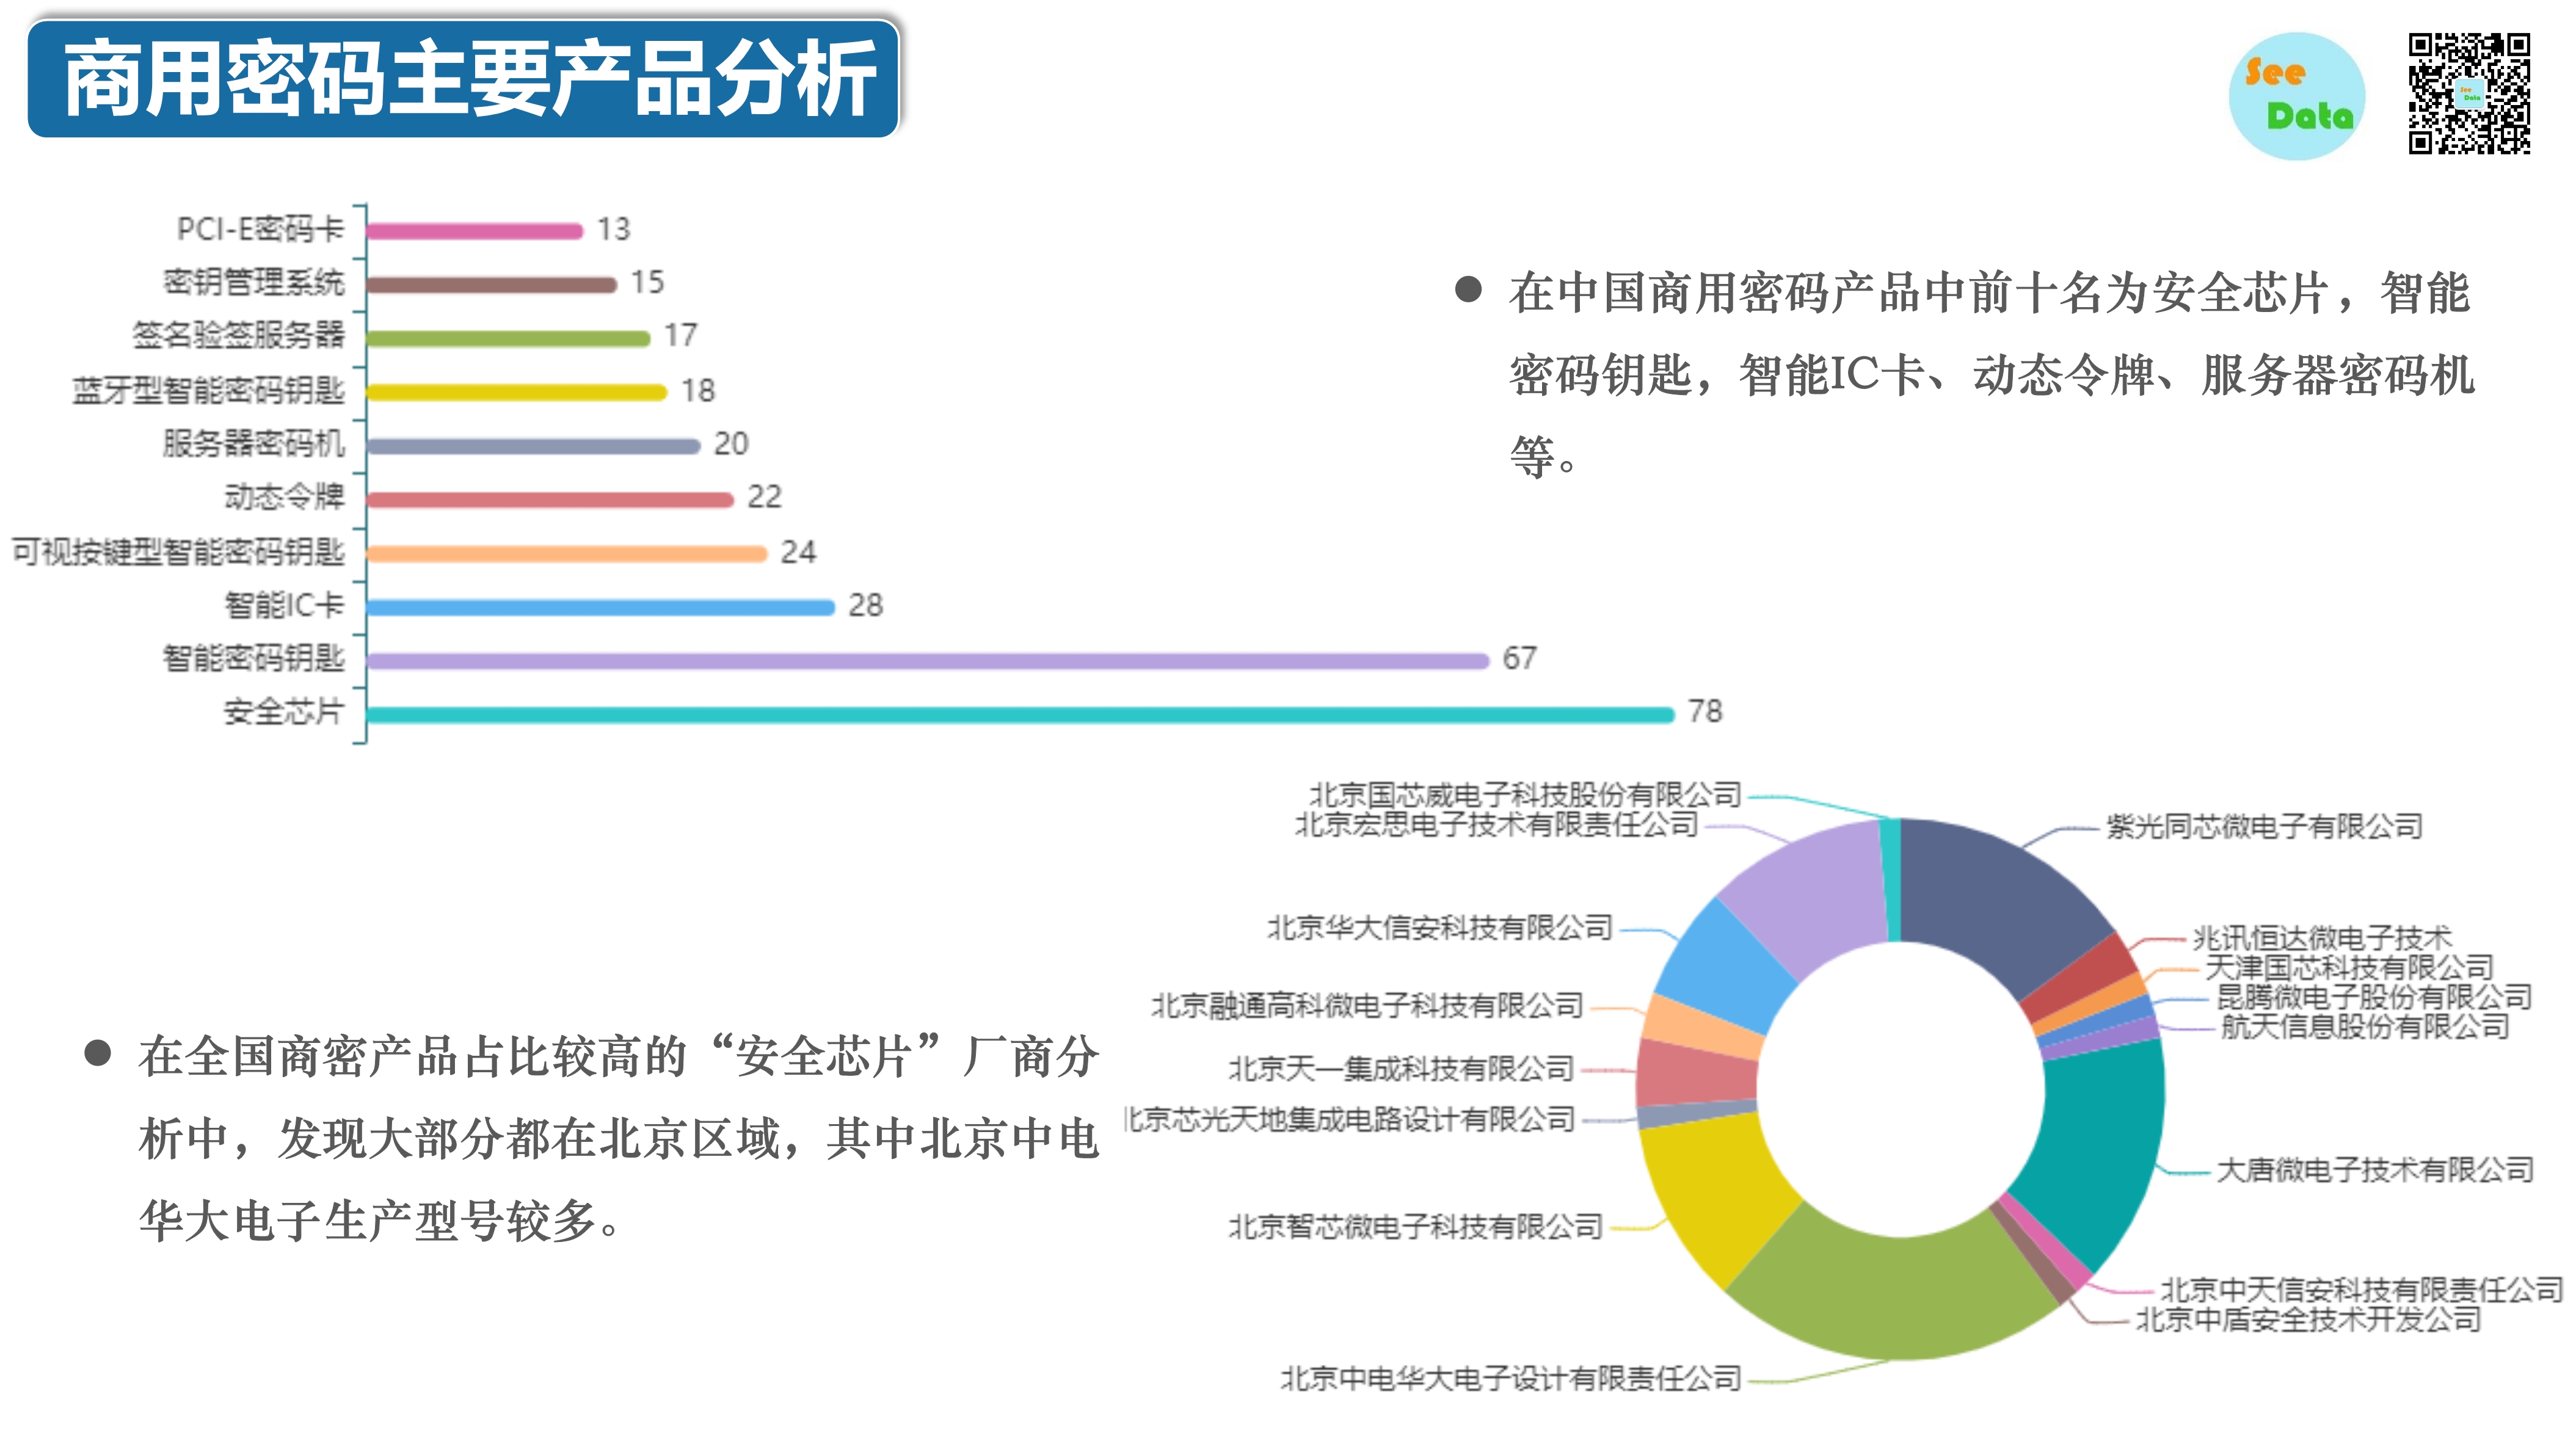 中国商用密码领域分析报告-第15张图片-网盾网络安全培训